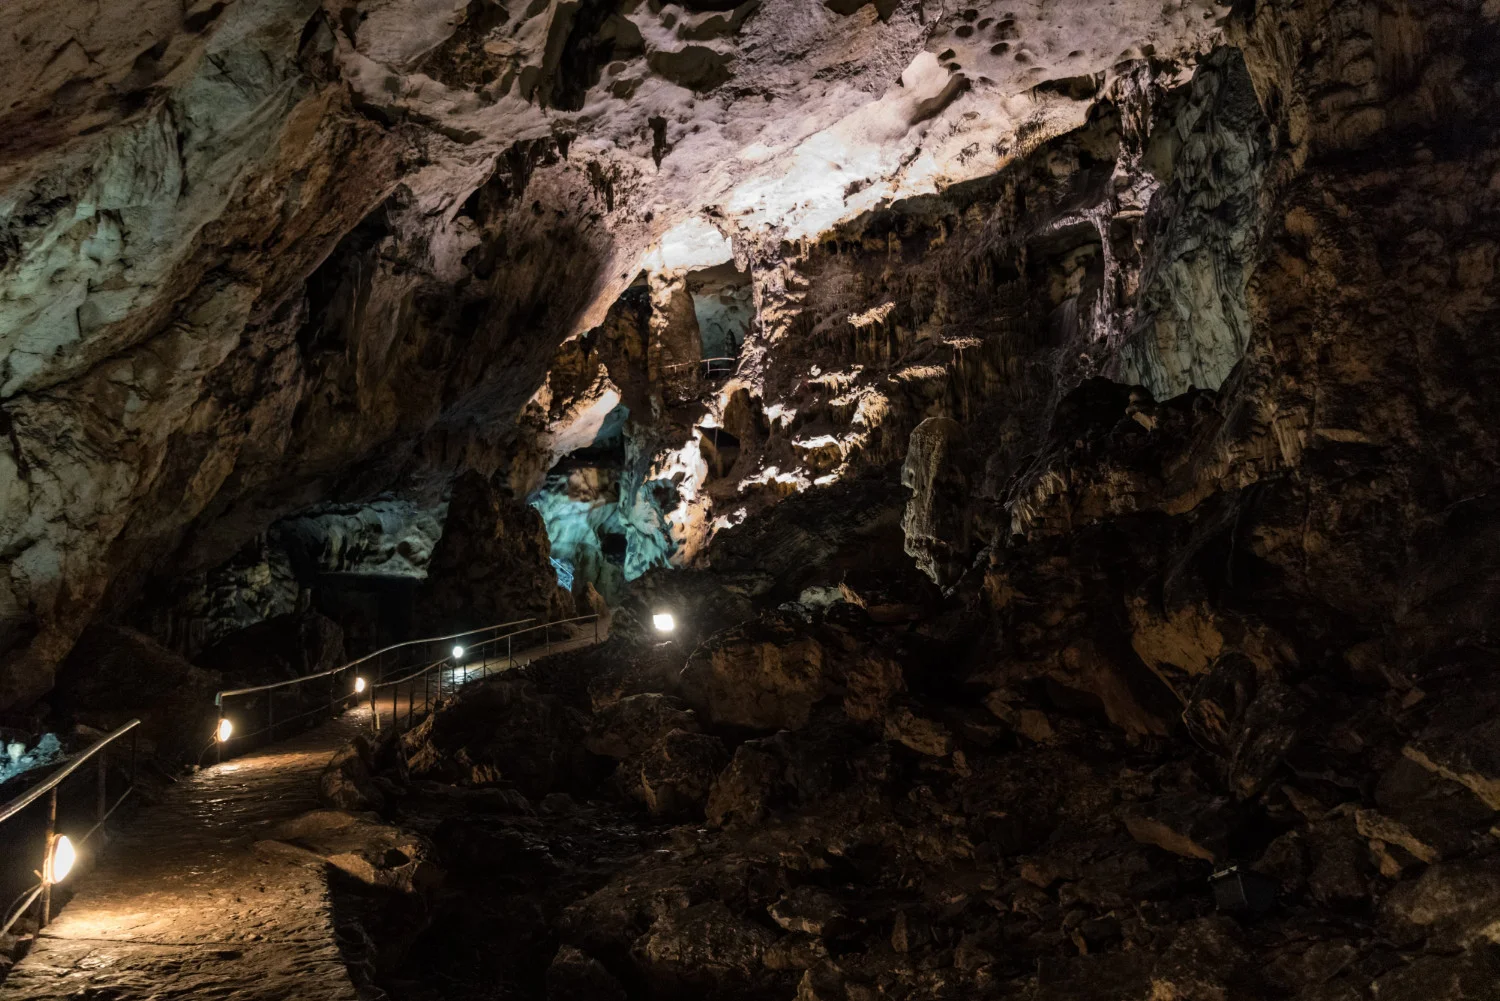 Vous pouvez participer à une visite guidée de la grotte de Magura et vous émerveiller devant l'art rupestre et les formations rocheuses d'un autre monde.